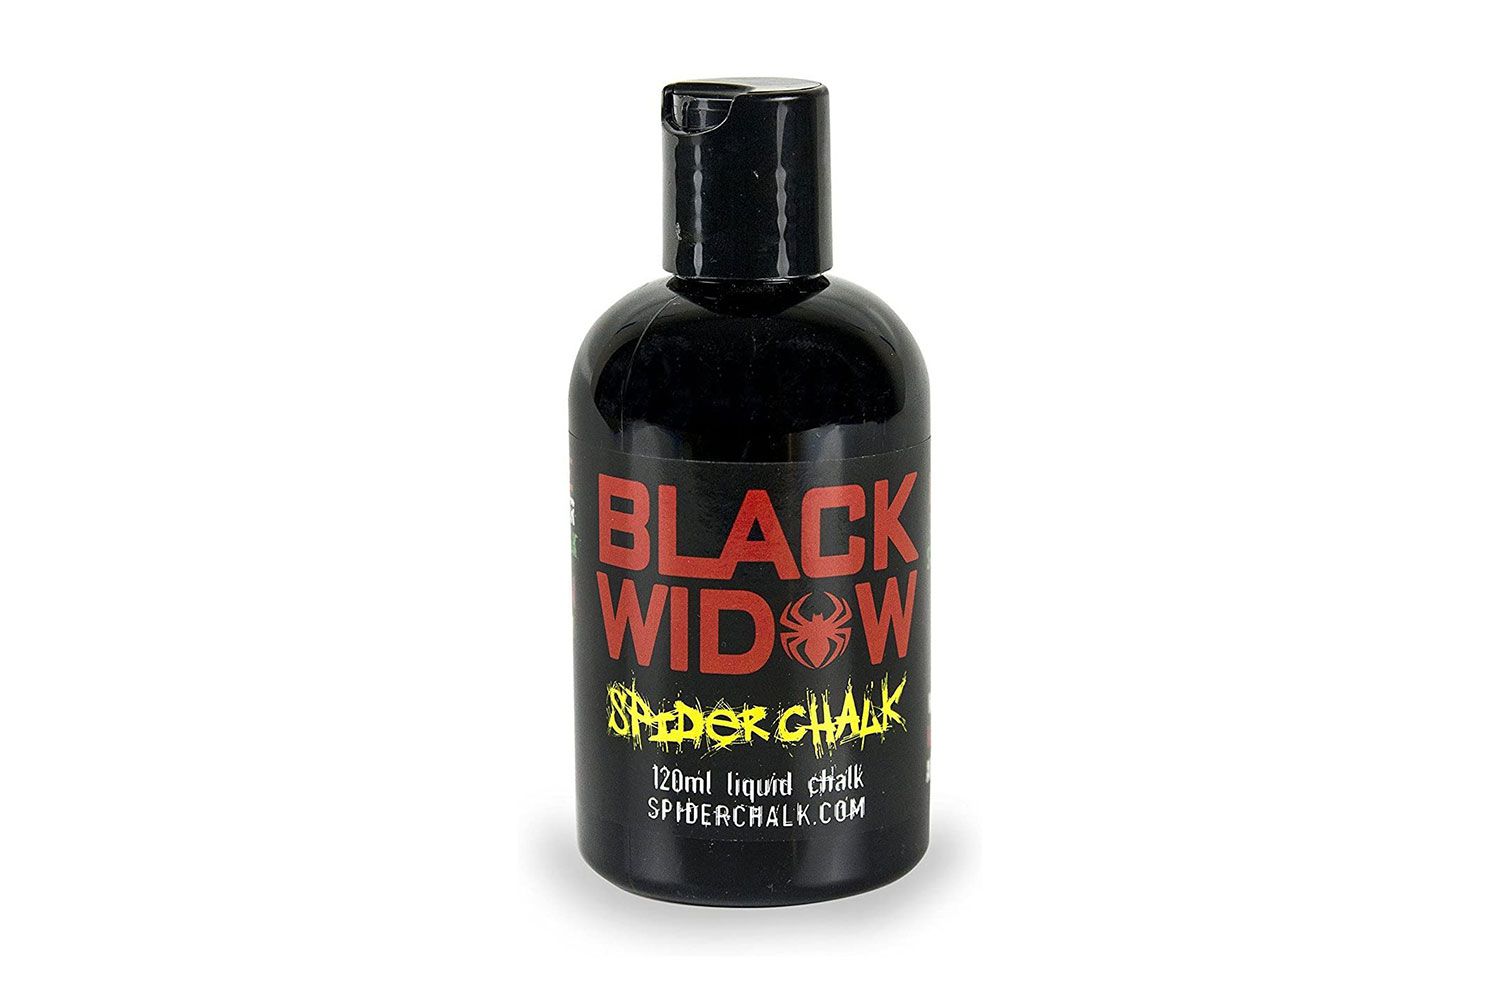 Spider Chalk Black Widow Liquid Chalk